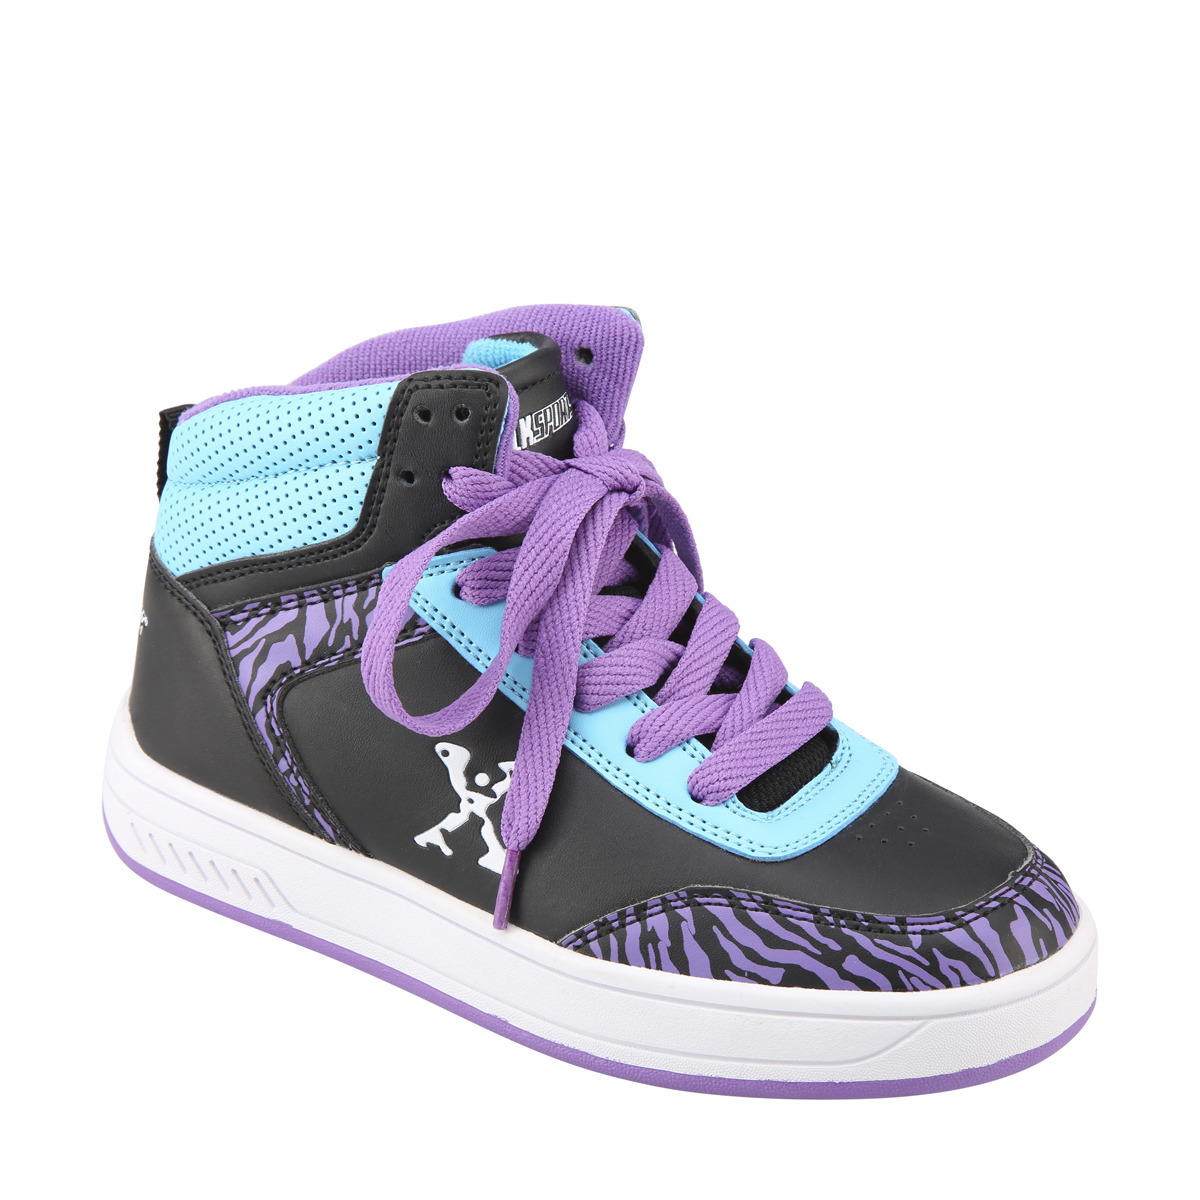 Sidewalk Sports Size 2 Purple Skate Shoes